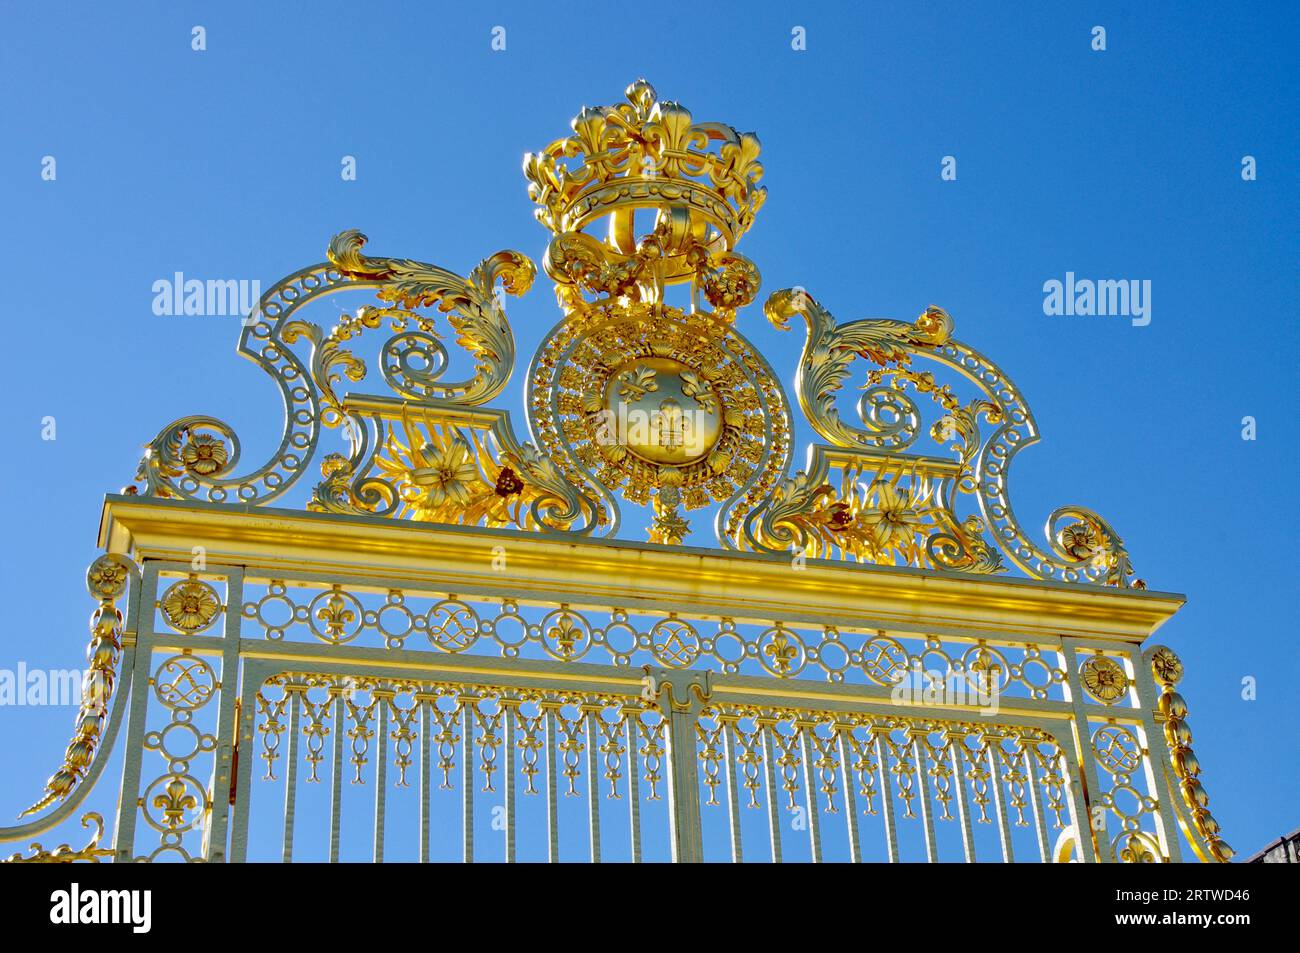 Les belles portes d'Or à l'extérieur du château de Versailles, sous un ciel bleu clair. Versailles, France. Banque D'Images